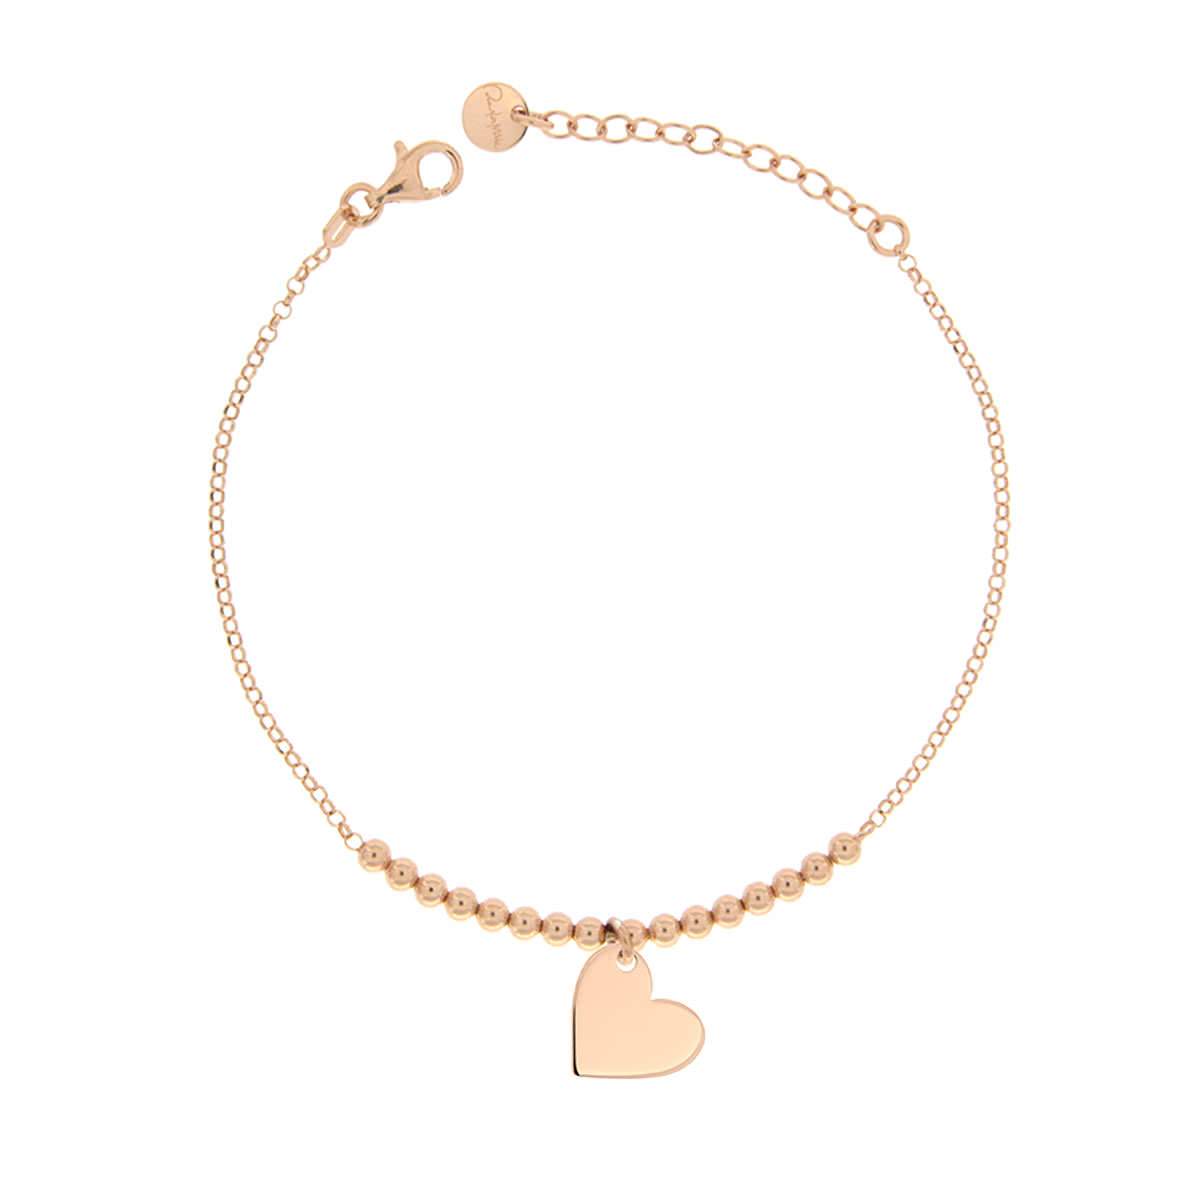 Bracelets - Bracelet Single Subject Heart - 3 | Rue des Mille